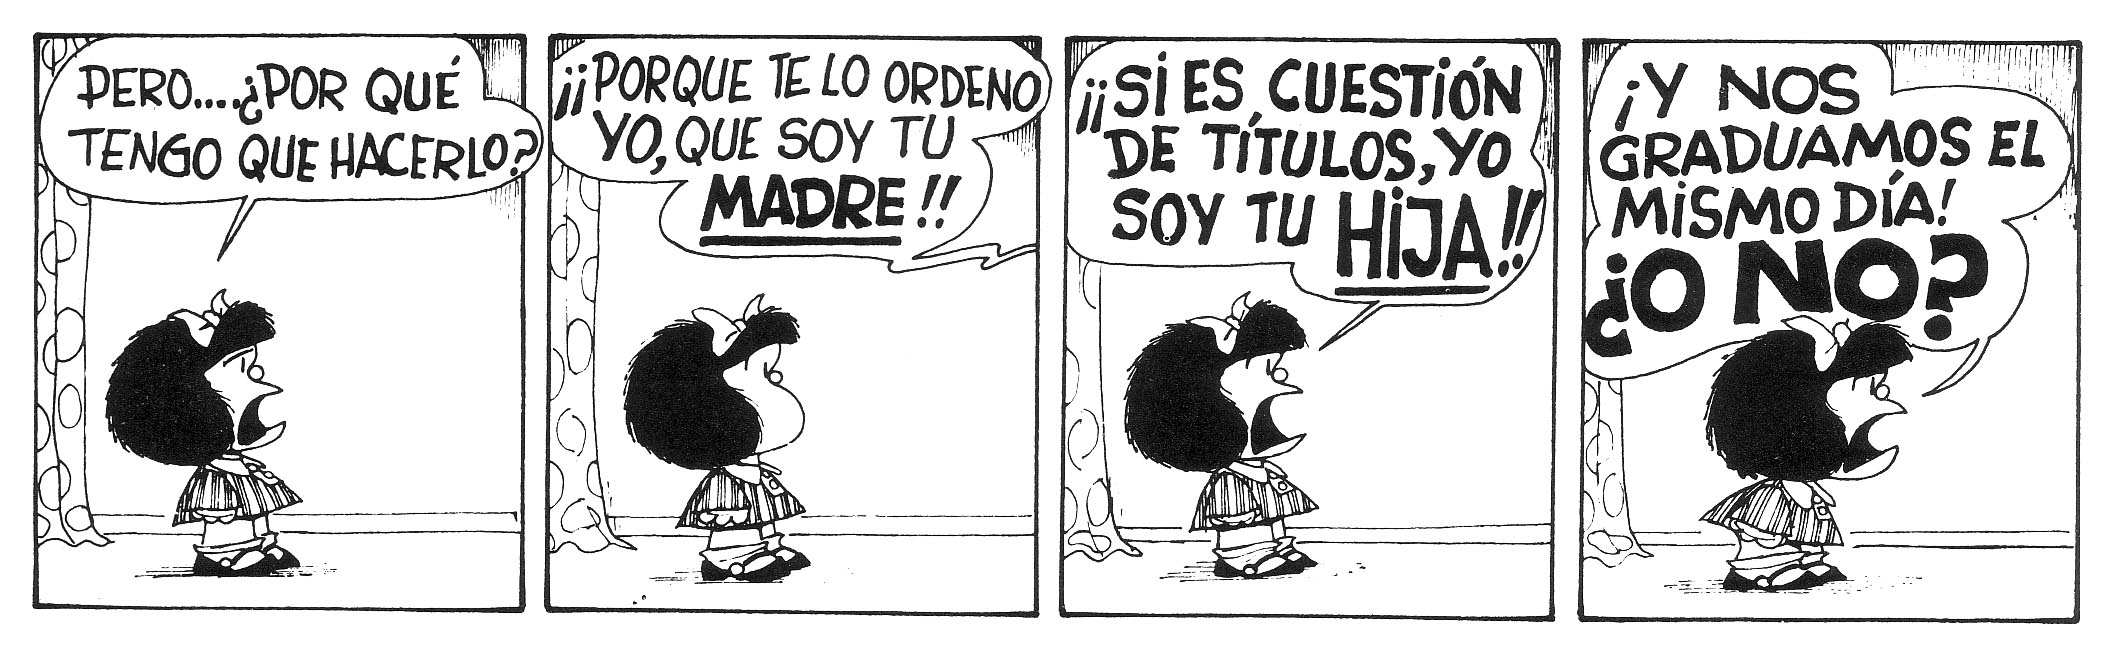 Historia Em Quadrinho Mafalda Em Espanhol